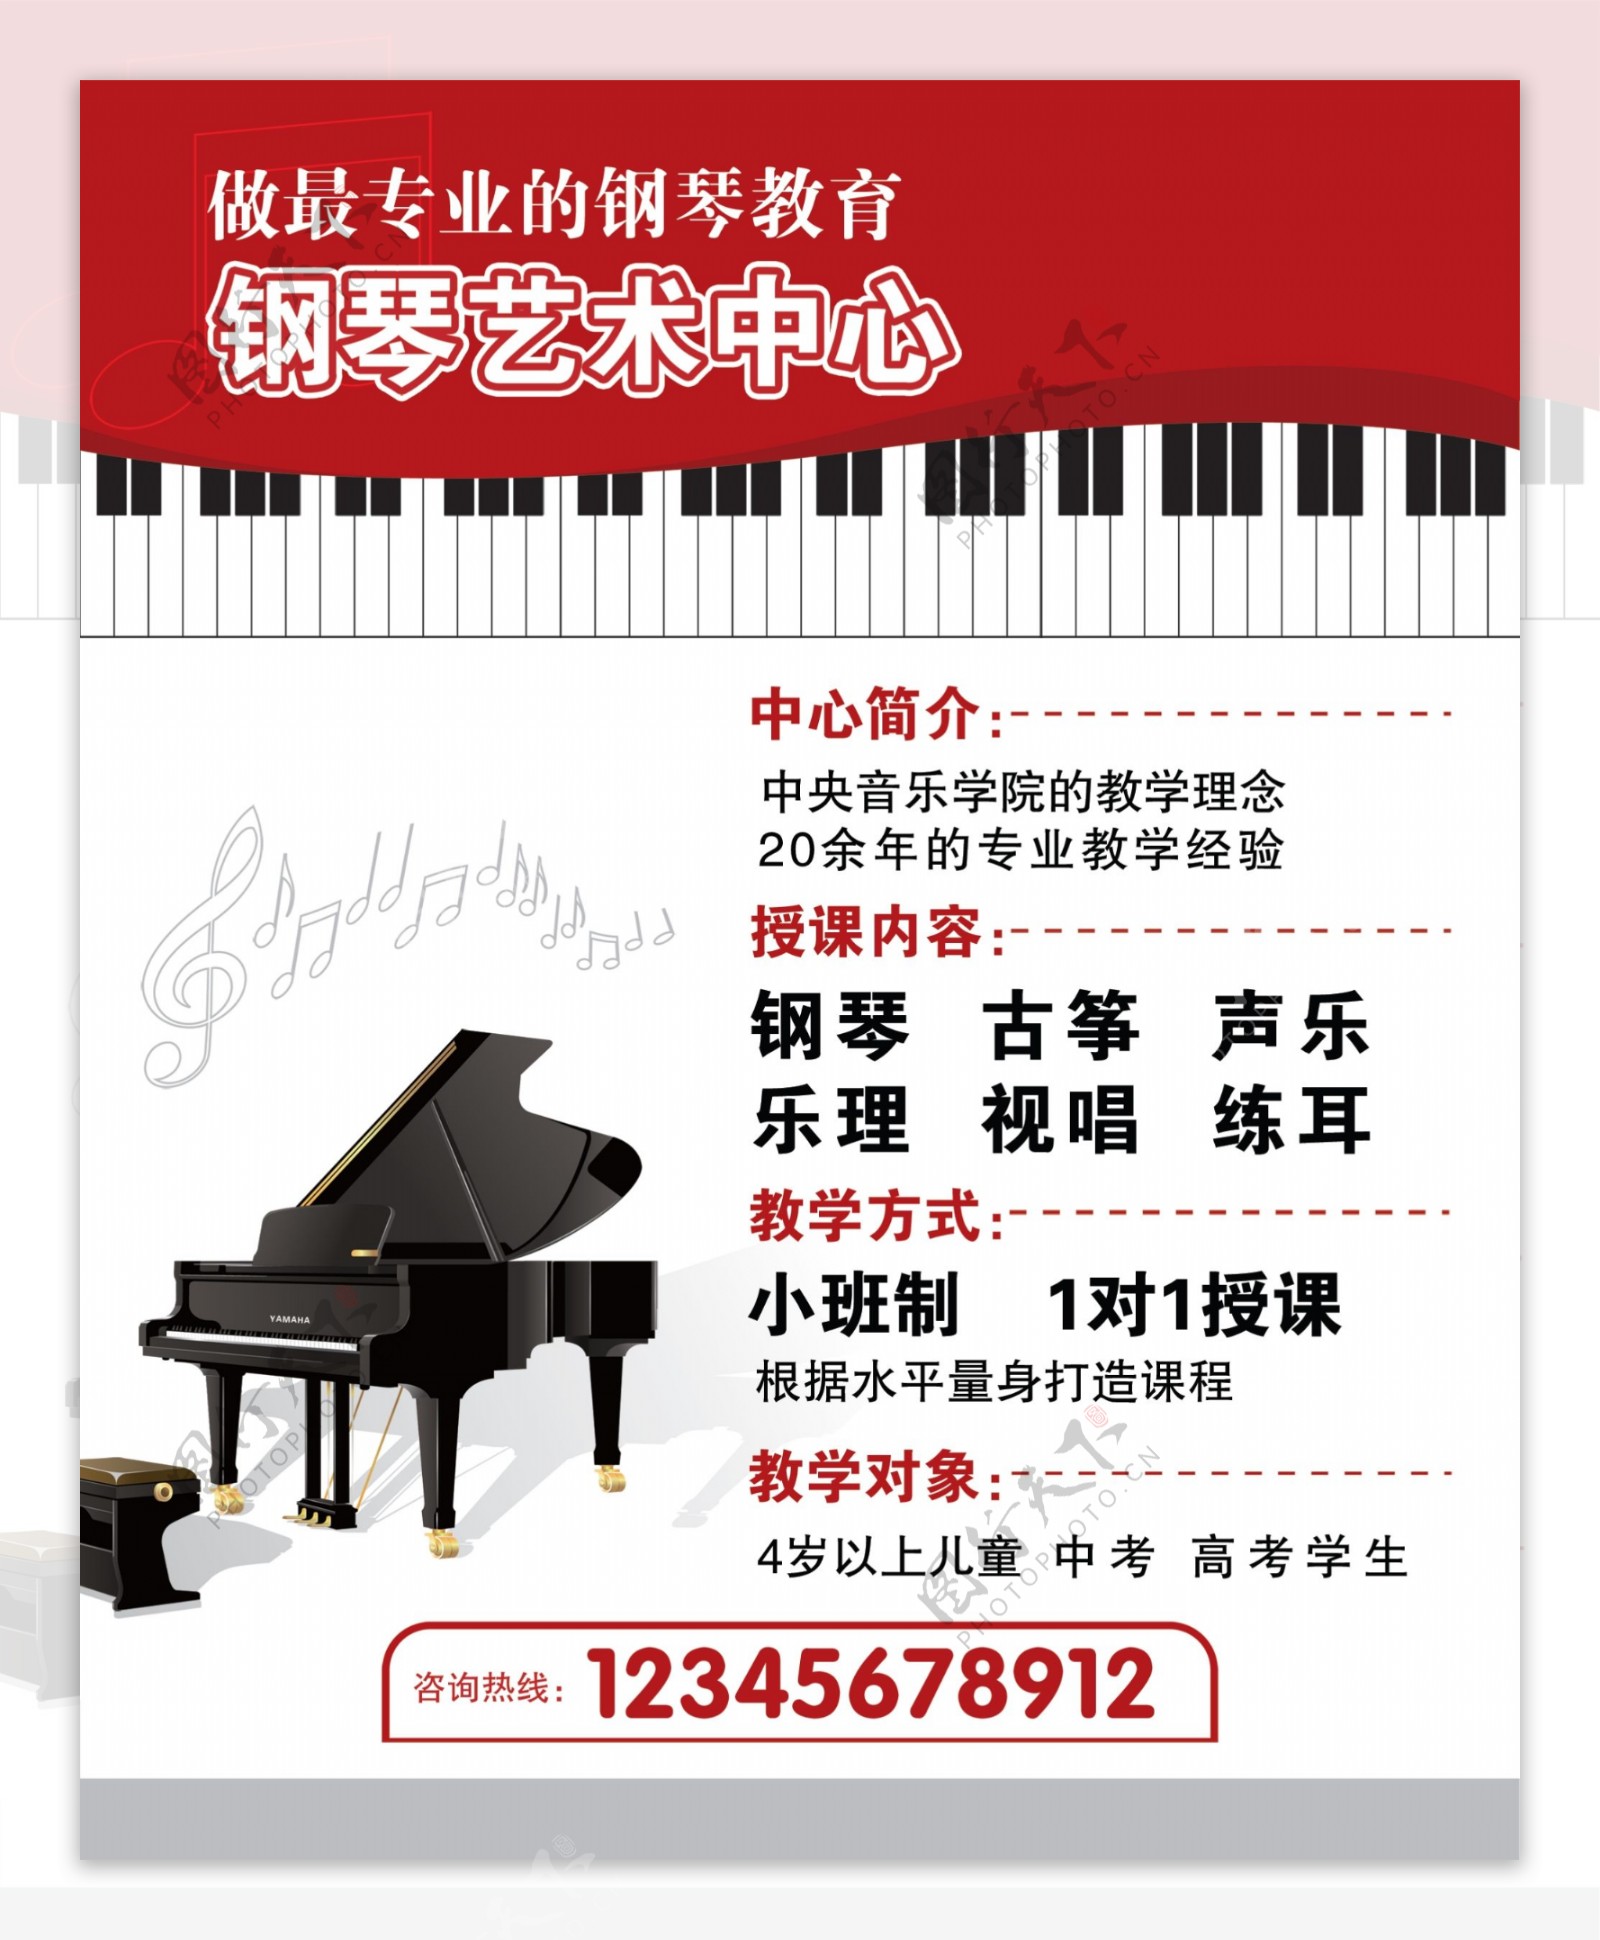 钢琴艺术中心钢琴培训班图片